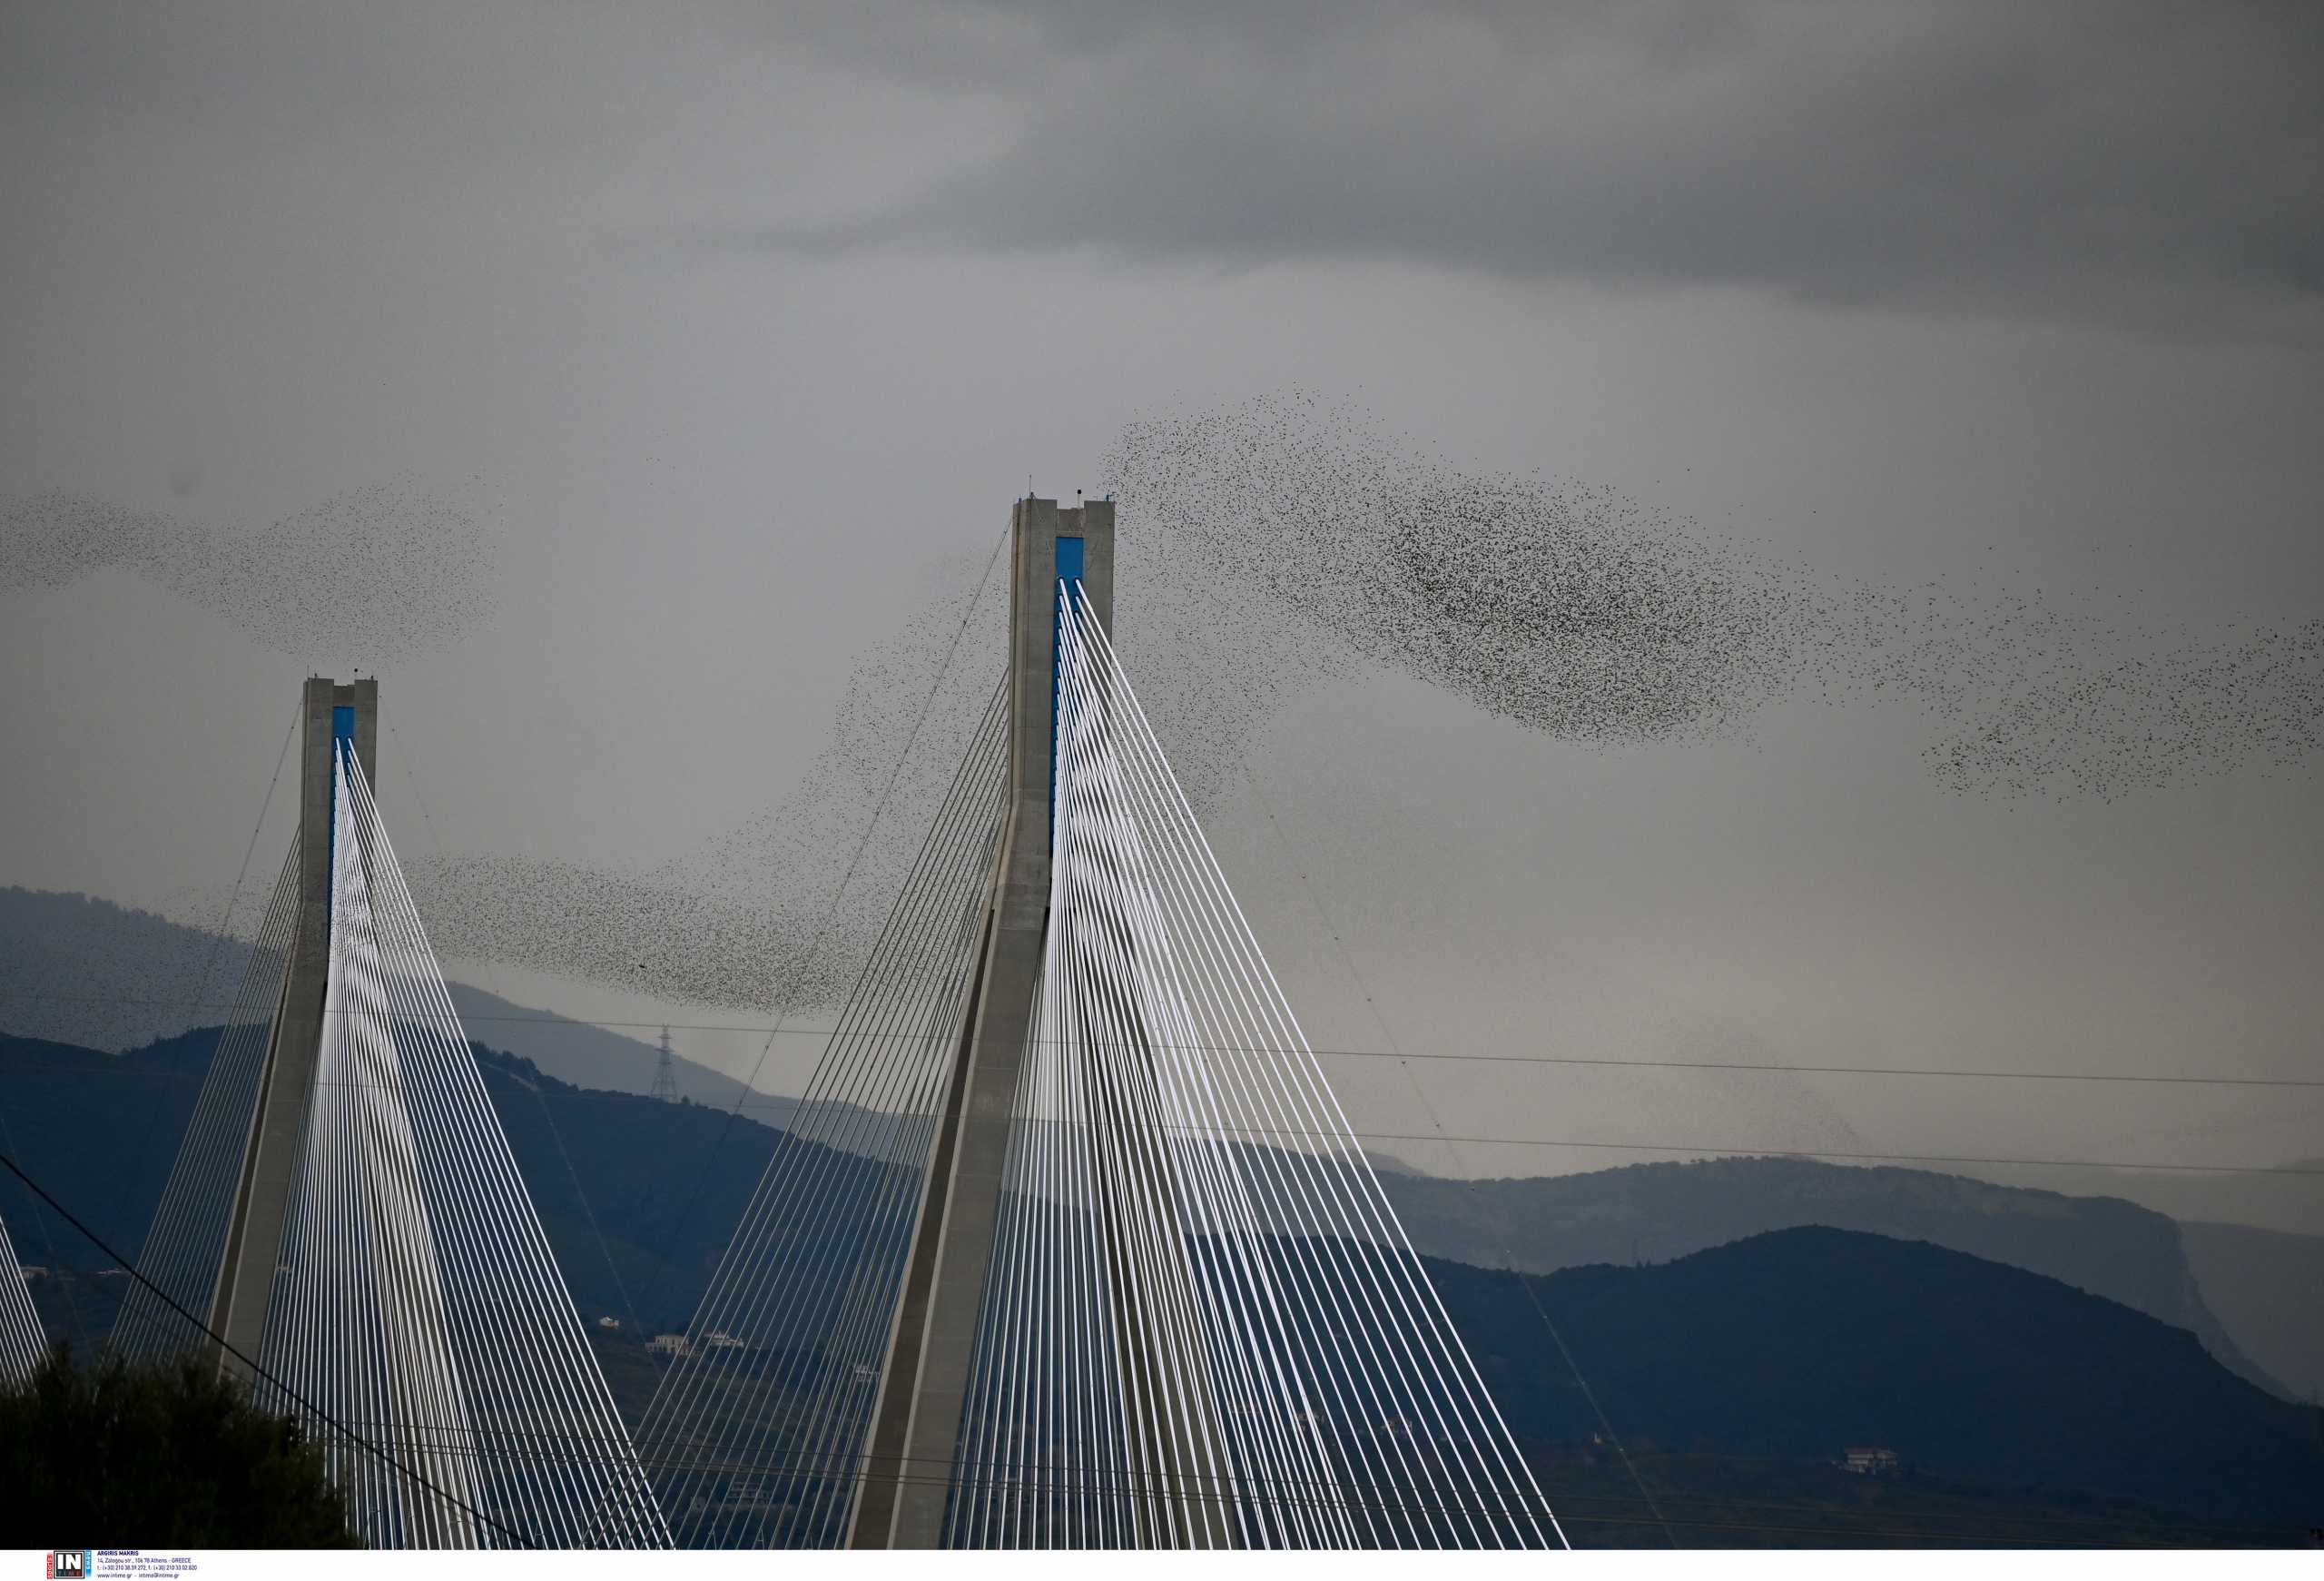 Γέφυρα Ρίου – Αντιρρίου: Ψαρόνια σε εντυπωσιακούς σχηματισμούς μέσα από 7 καλλιτεχνικές φωτογραφίες